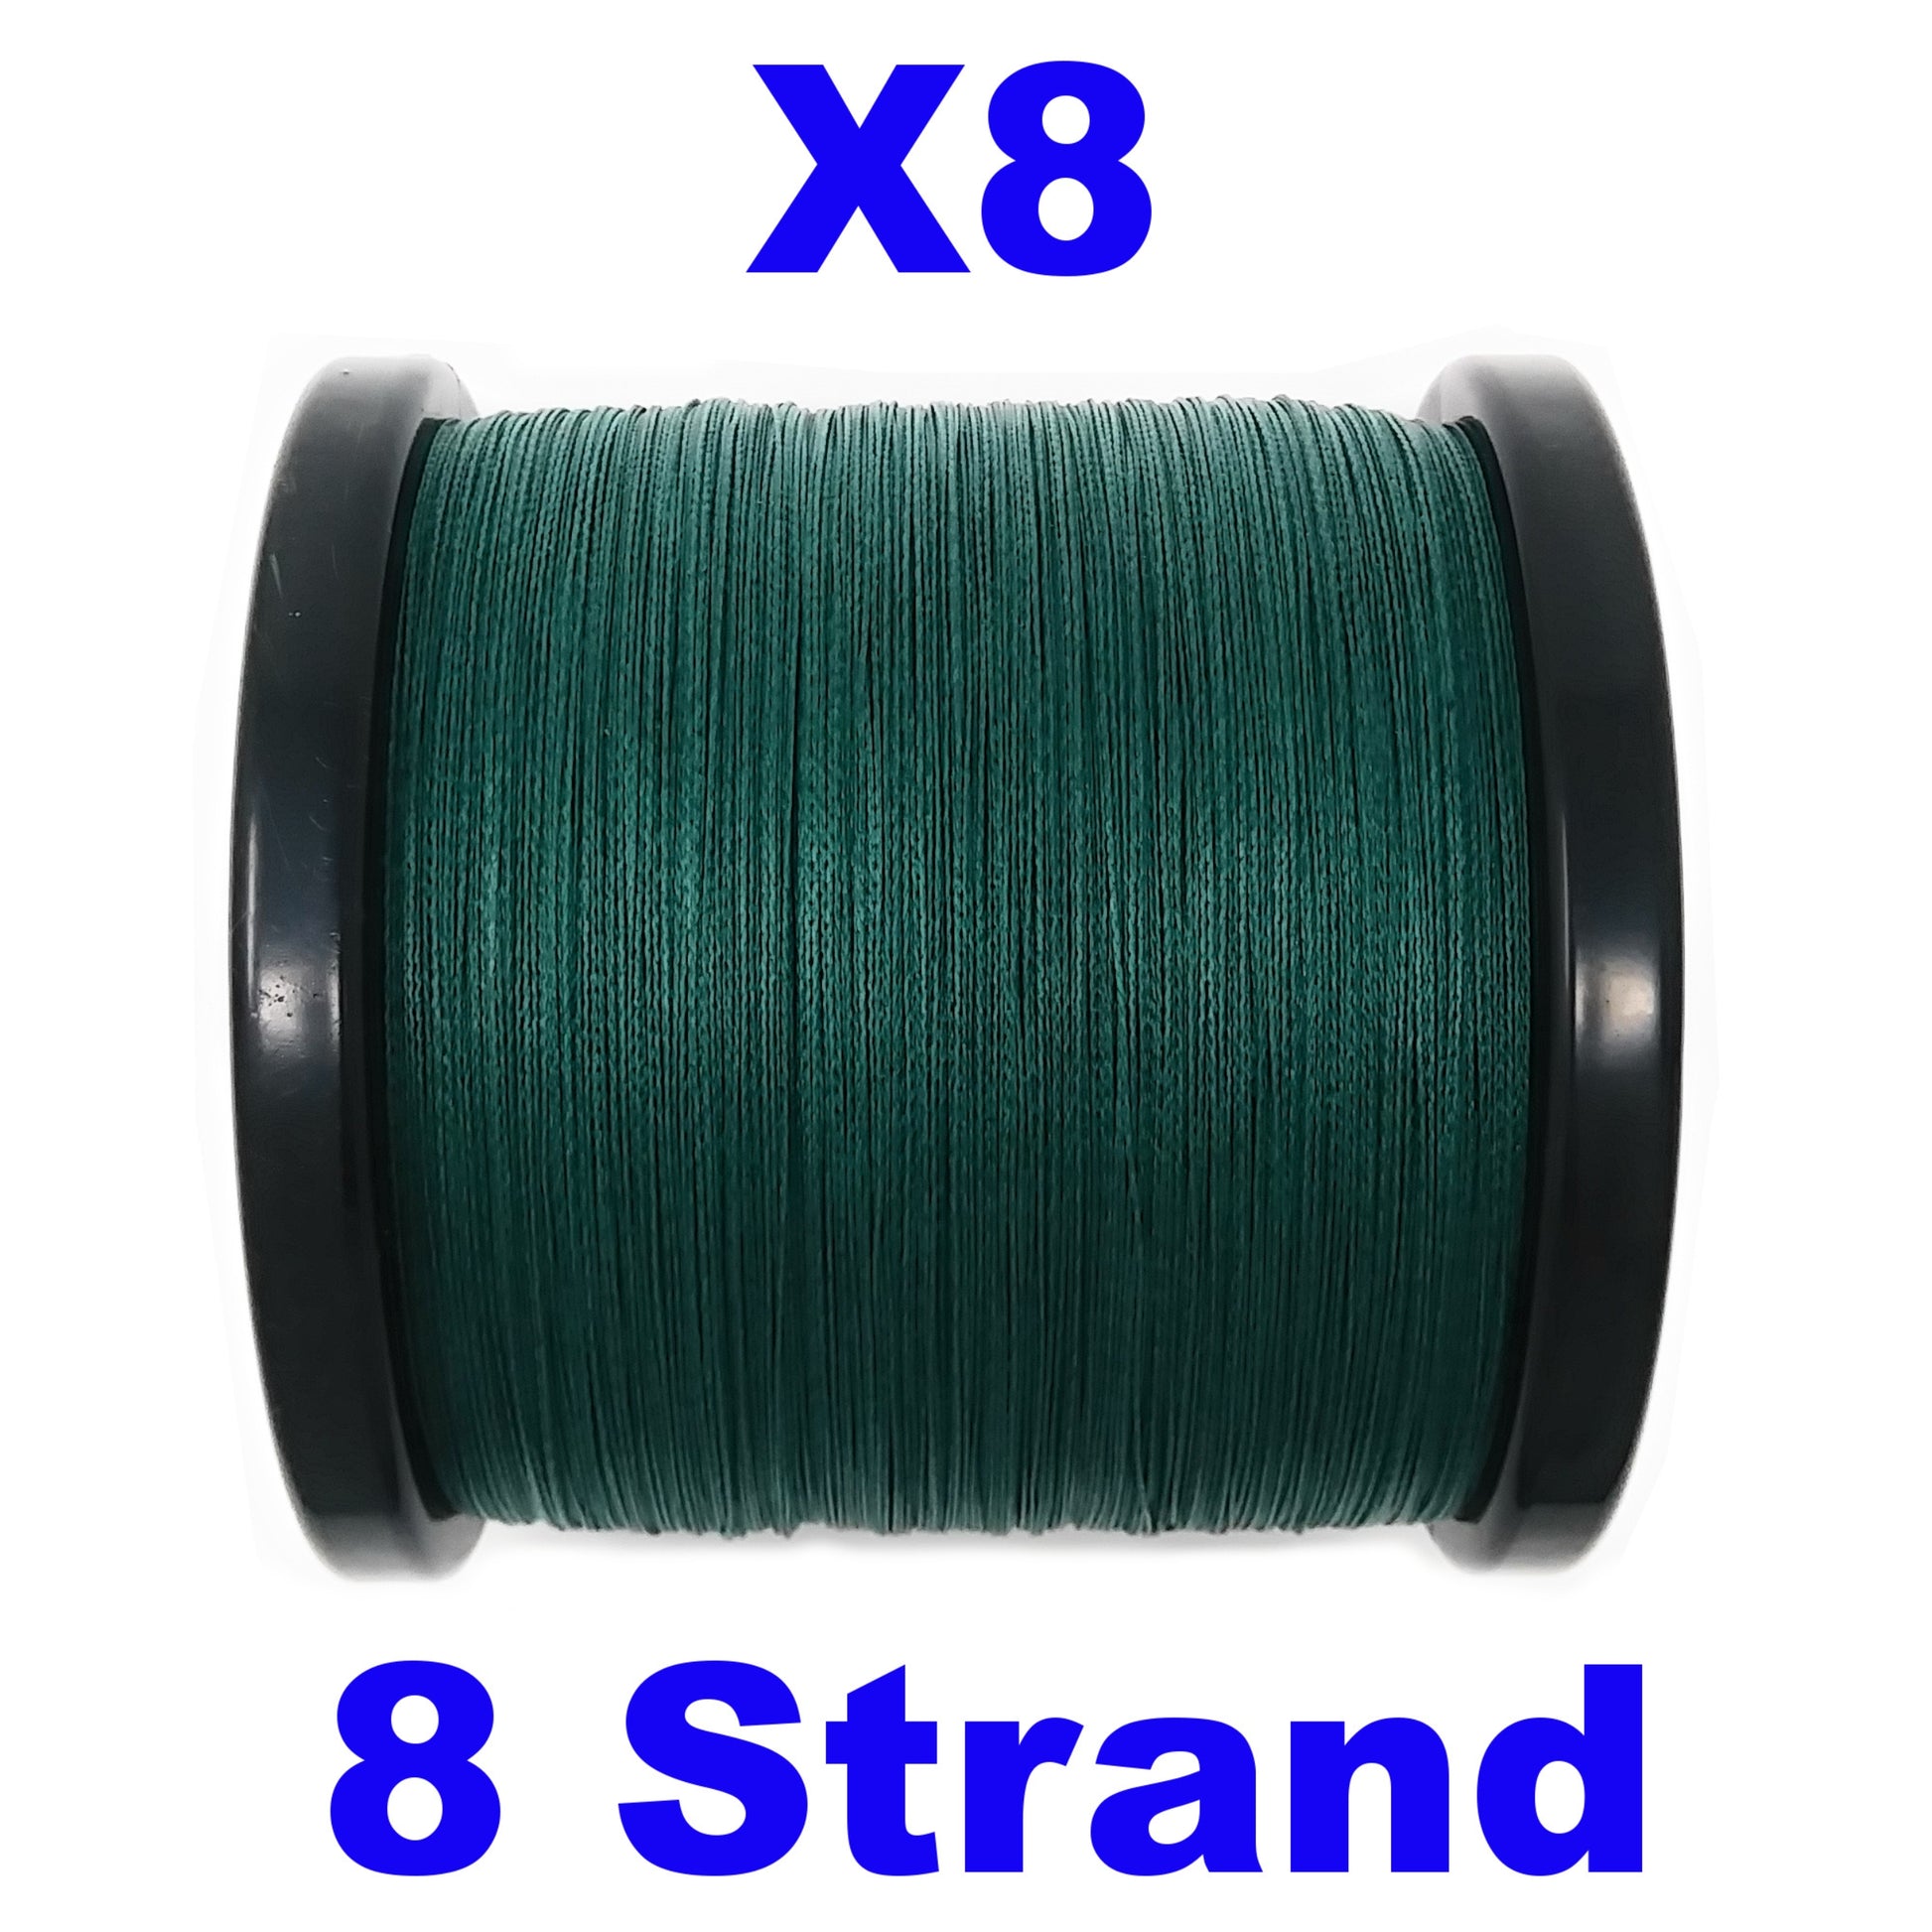 ReelBoss Strike x8 Blue 8 Strand Braid Fishing Line - ReelBoss